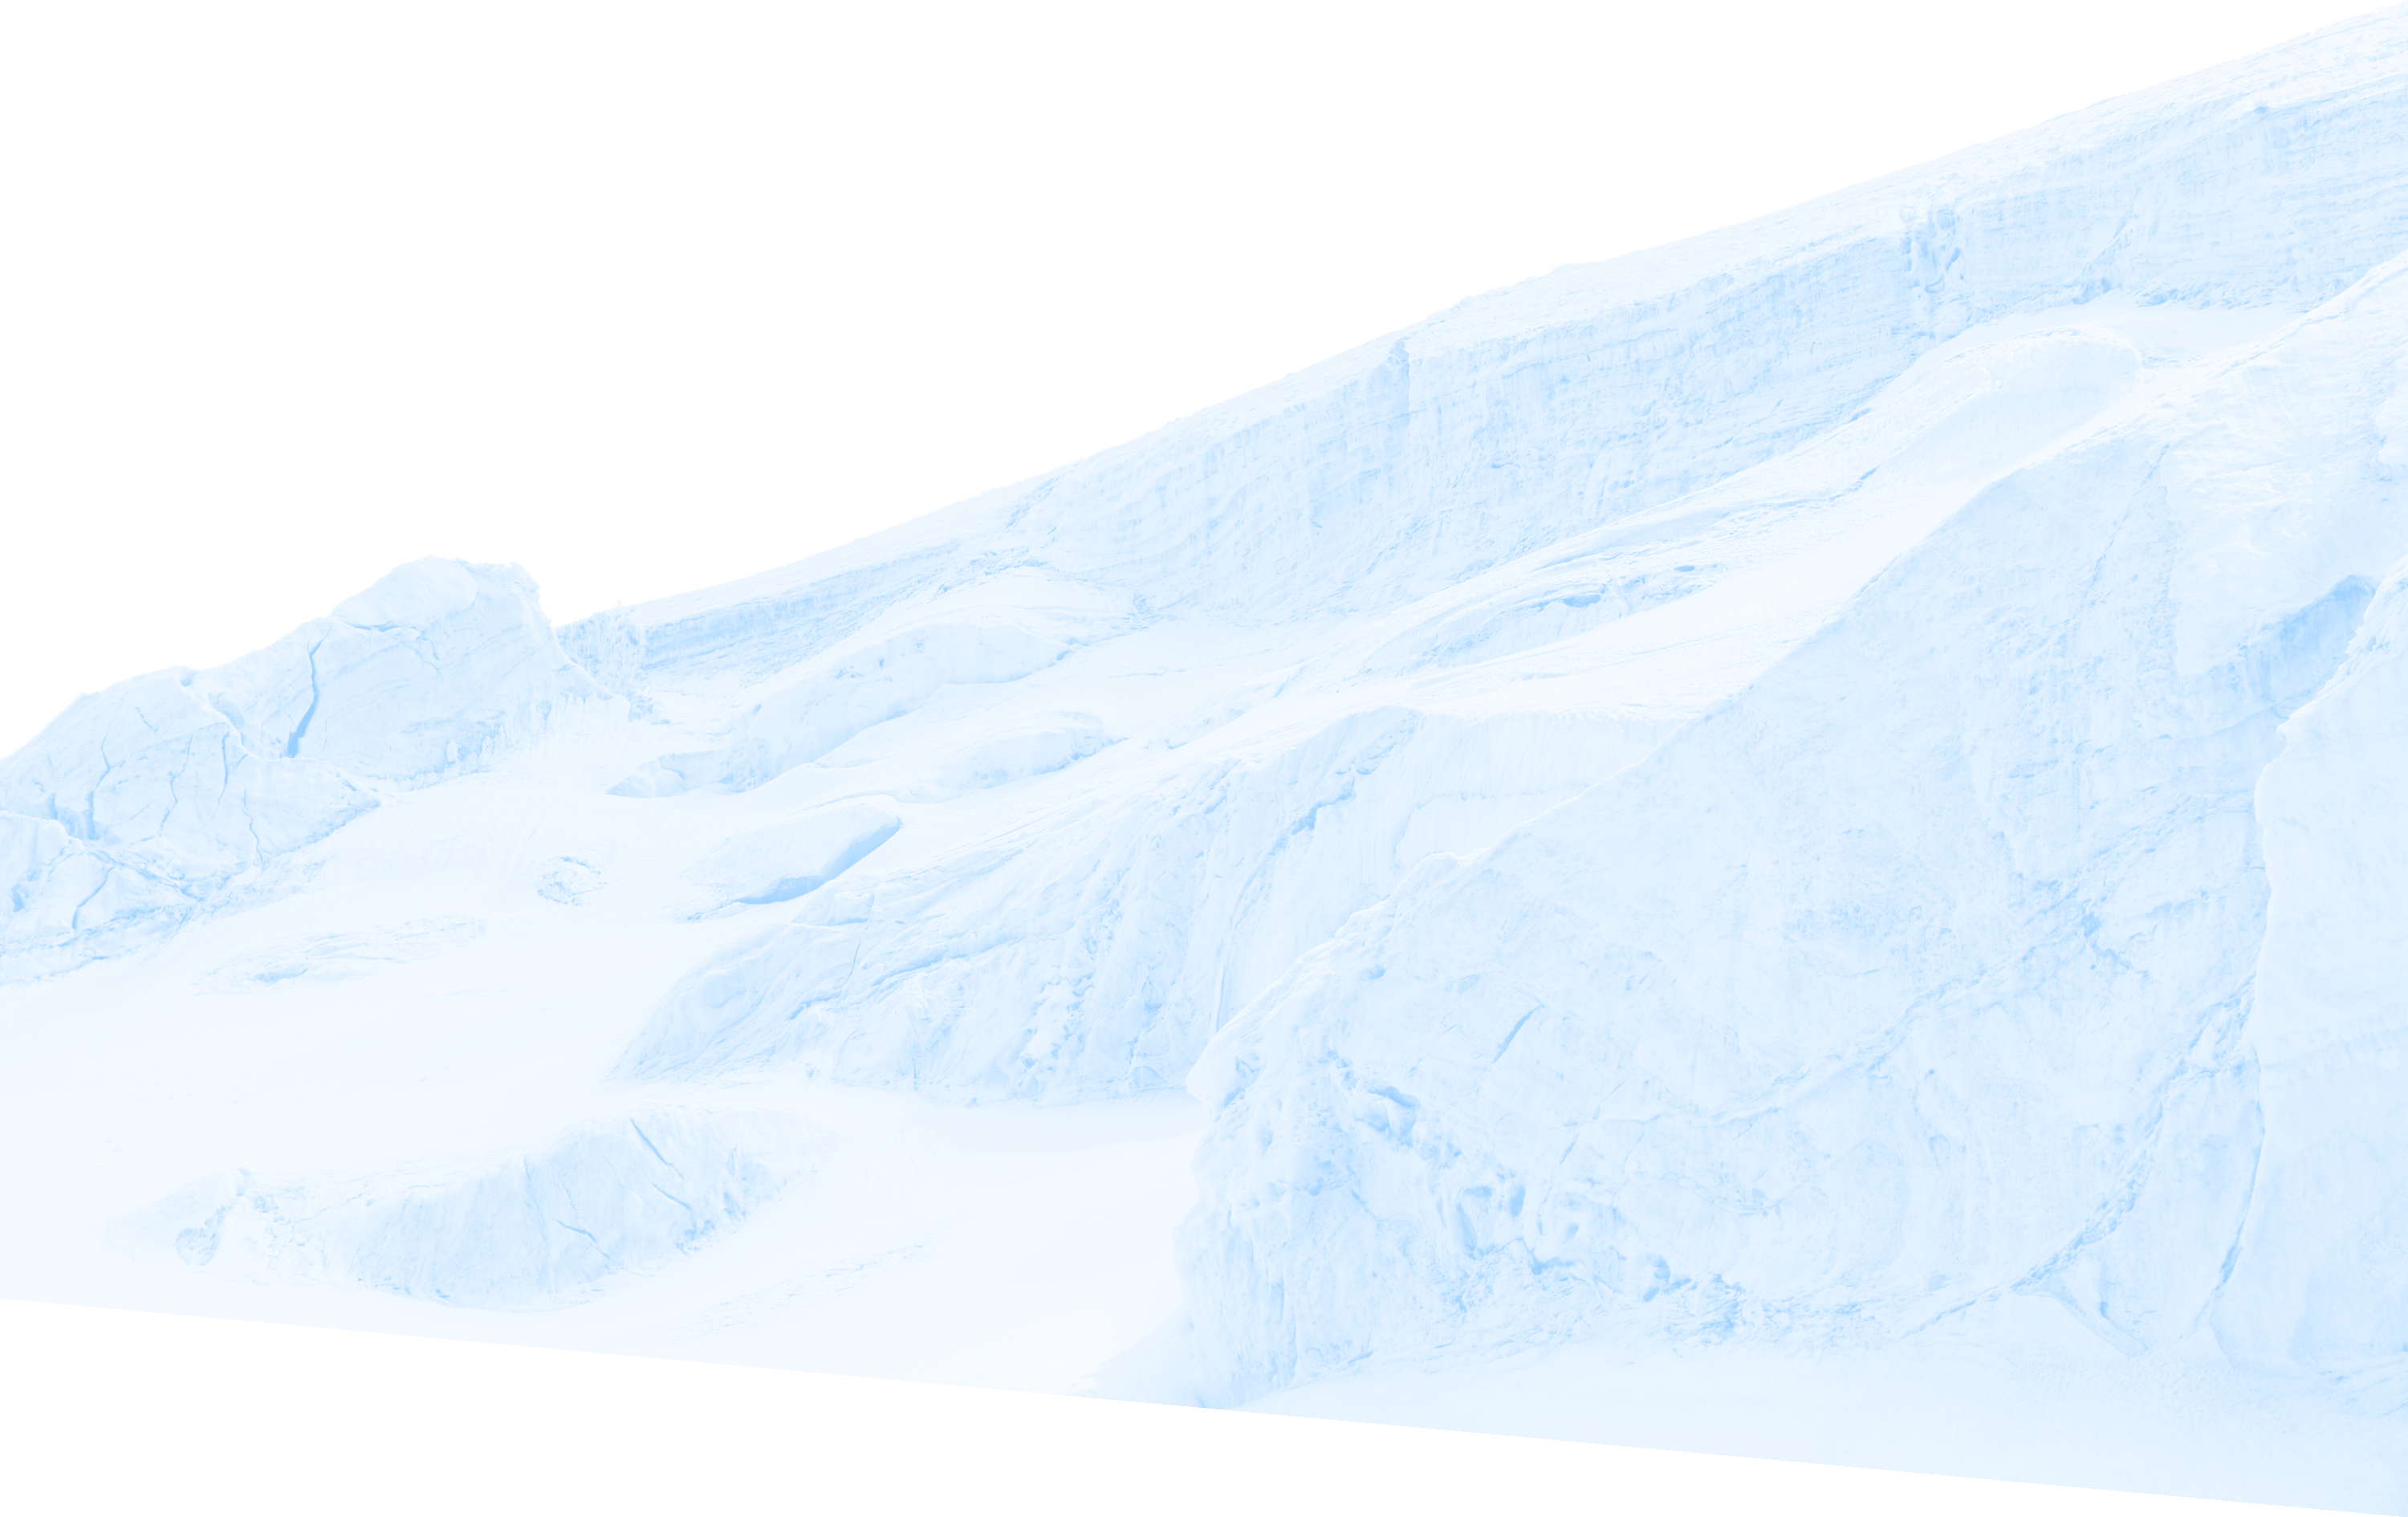 Image of a glacier